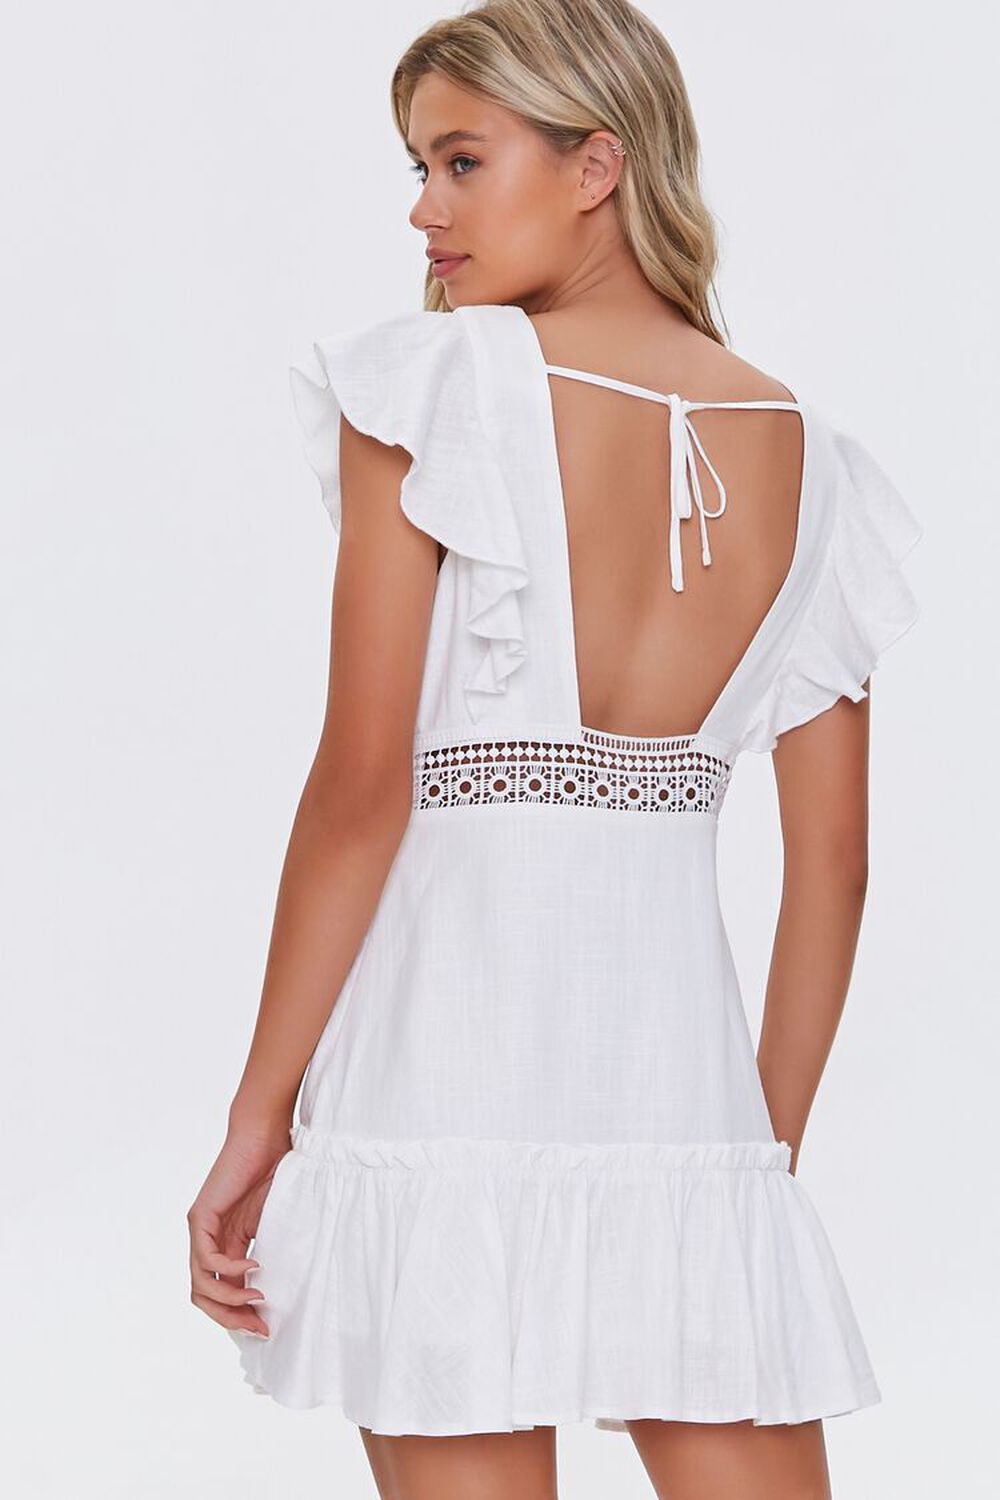 WHITE Ruffled Lace-Trim Cap-Sleeve Dress, image 3